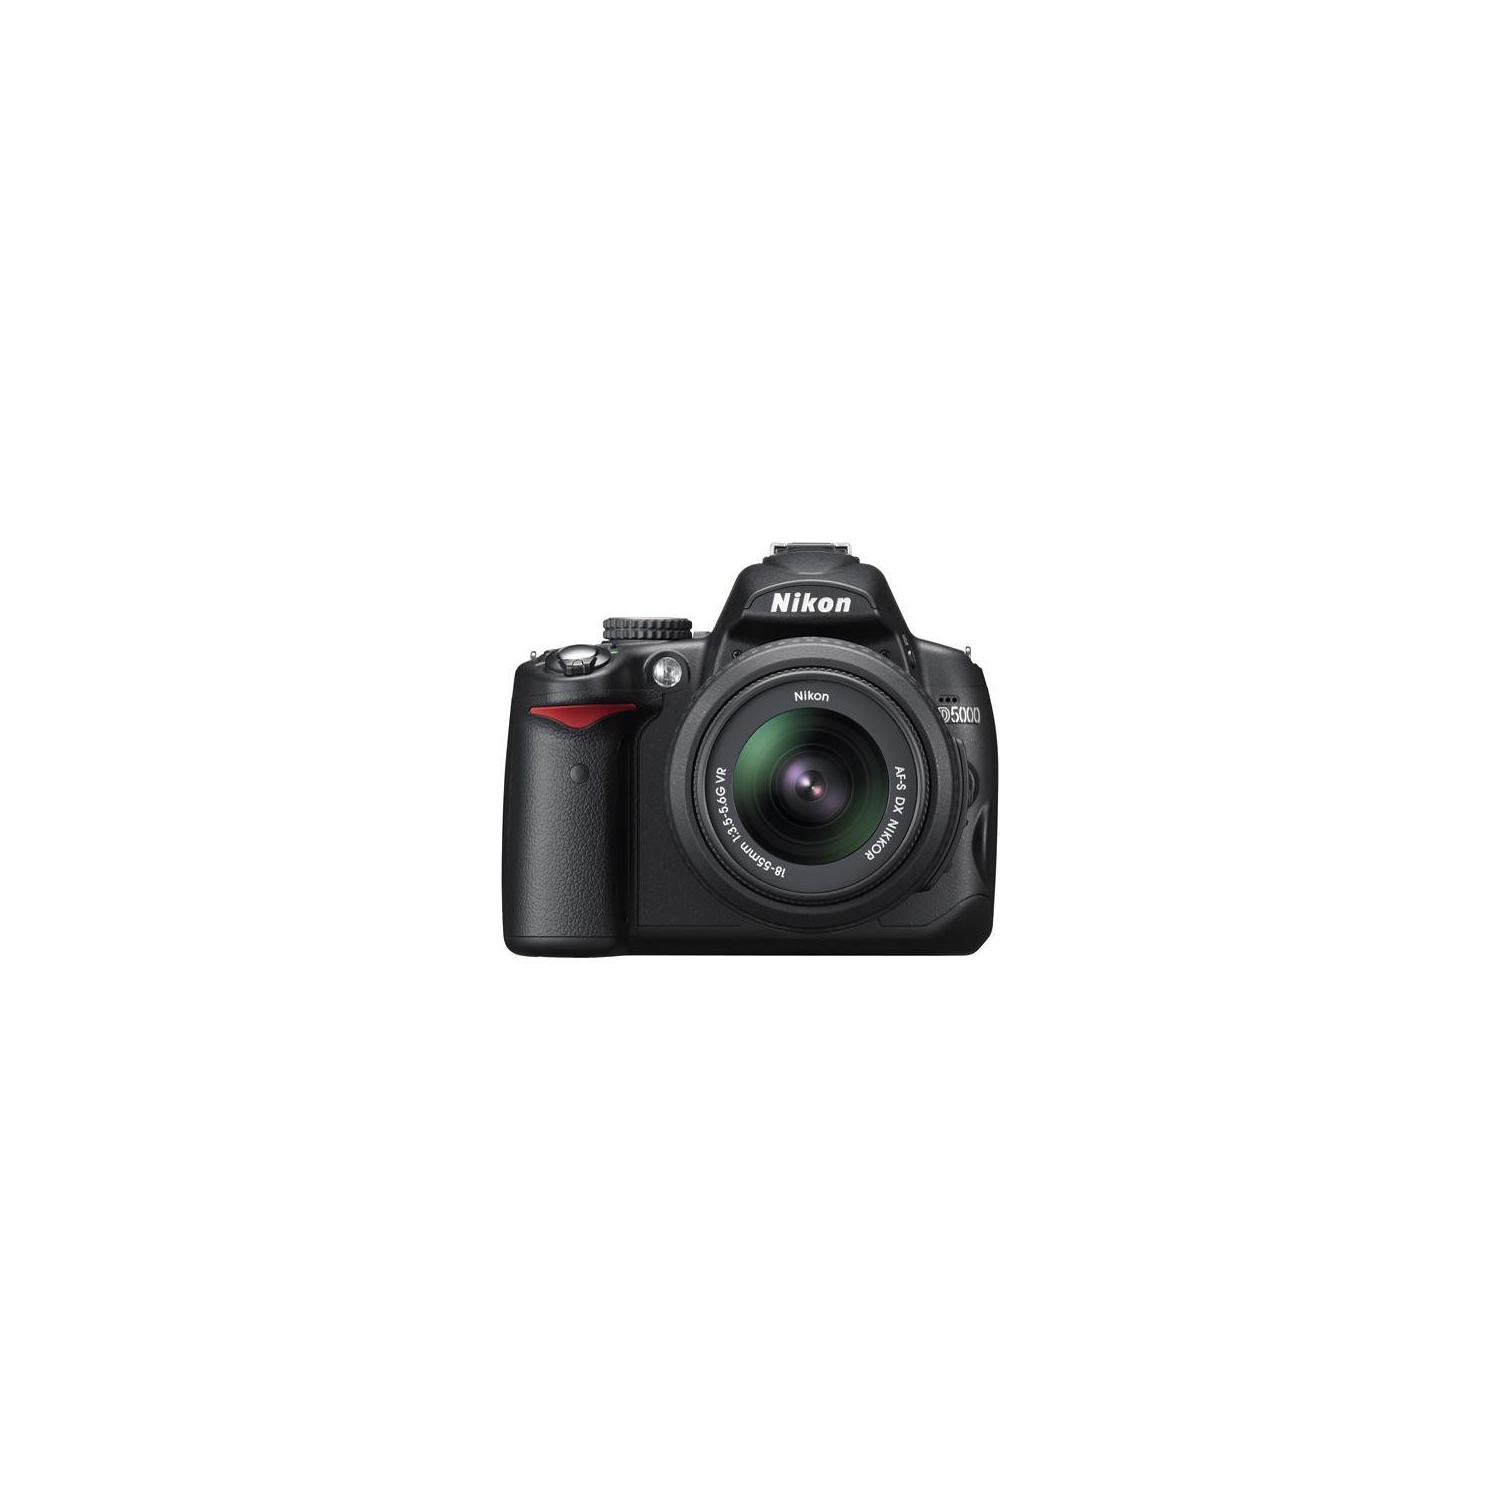 Nikon D5000/D5300 Digital SLR Camera Kit with 18-55mm VR Lens - US Version w/ Seller Warranty